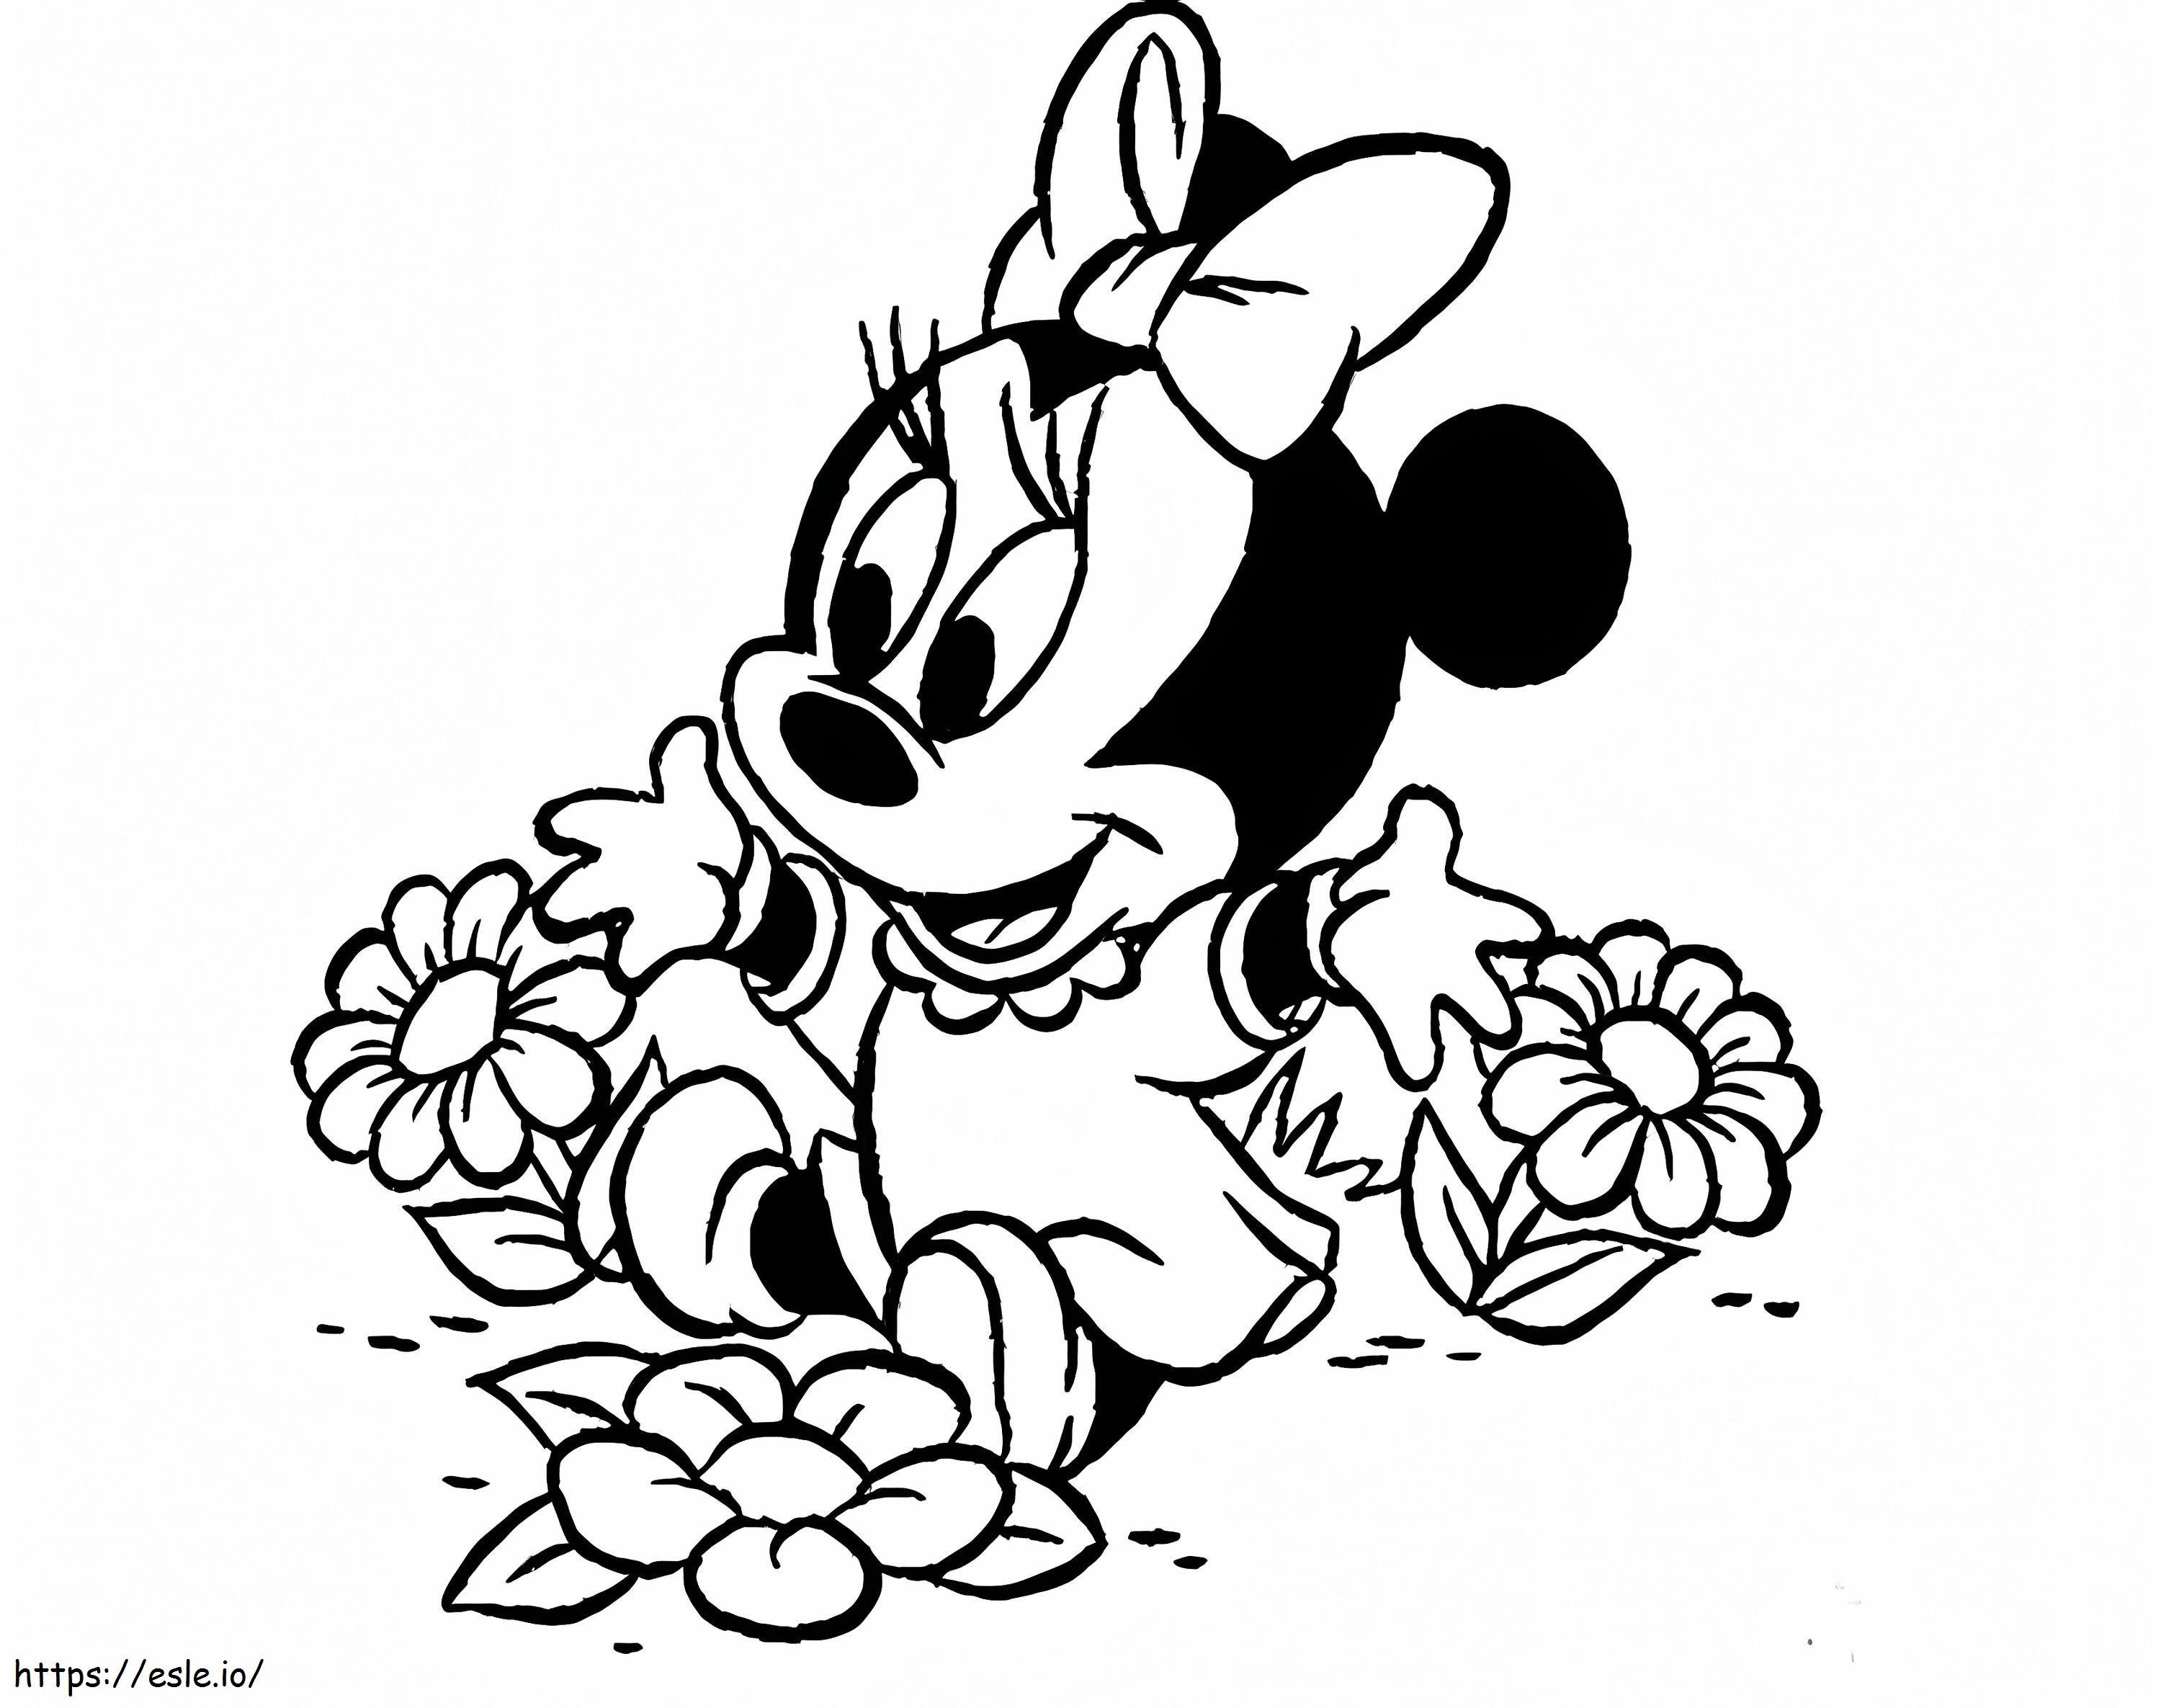 Minnie Mouse Con Flores ausmalbilder